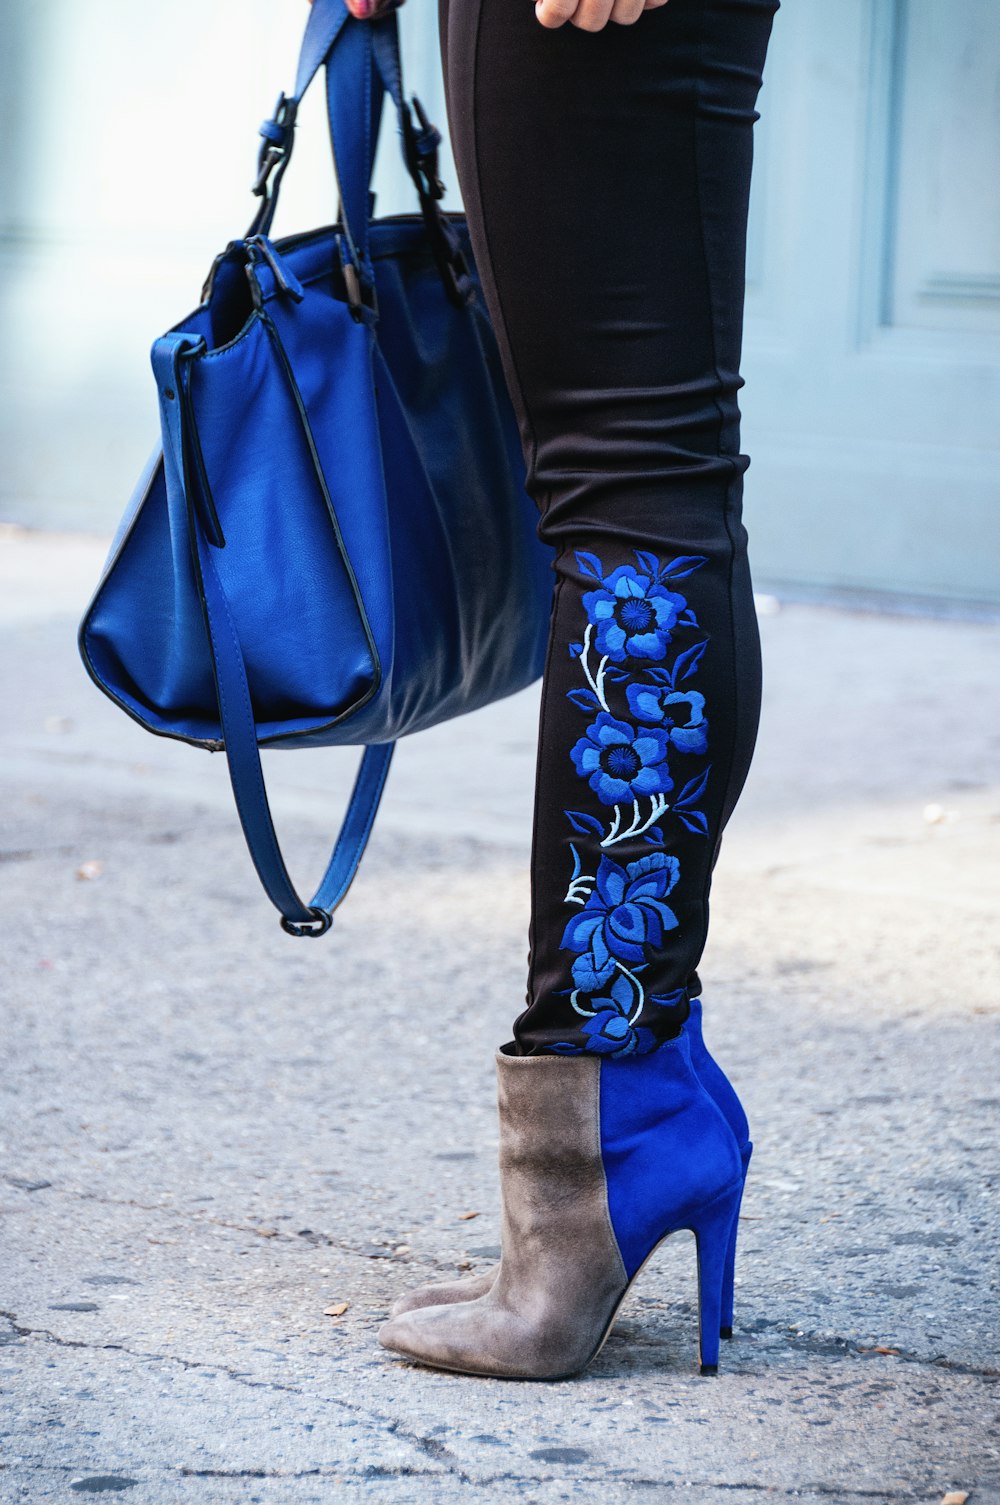 Person in schwarzen Leggings, Stiefeletten und tragender blauer Tasche